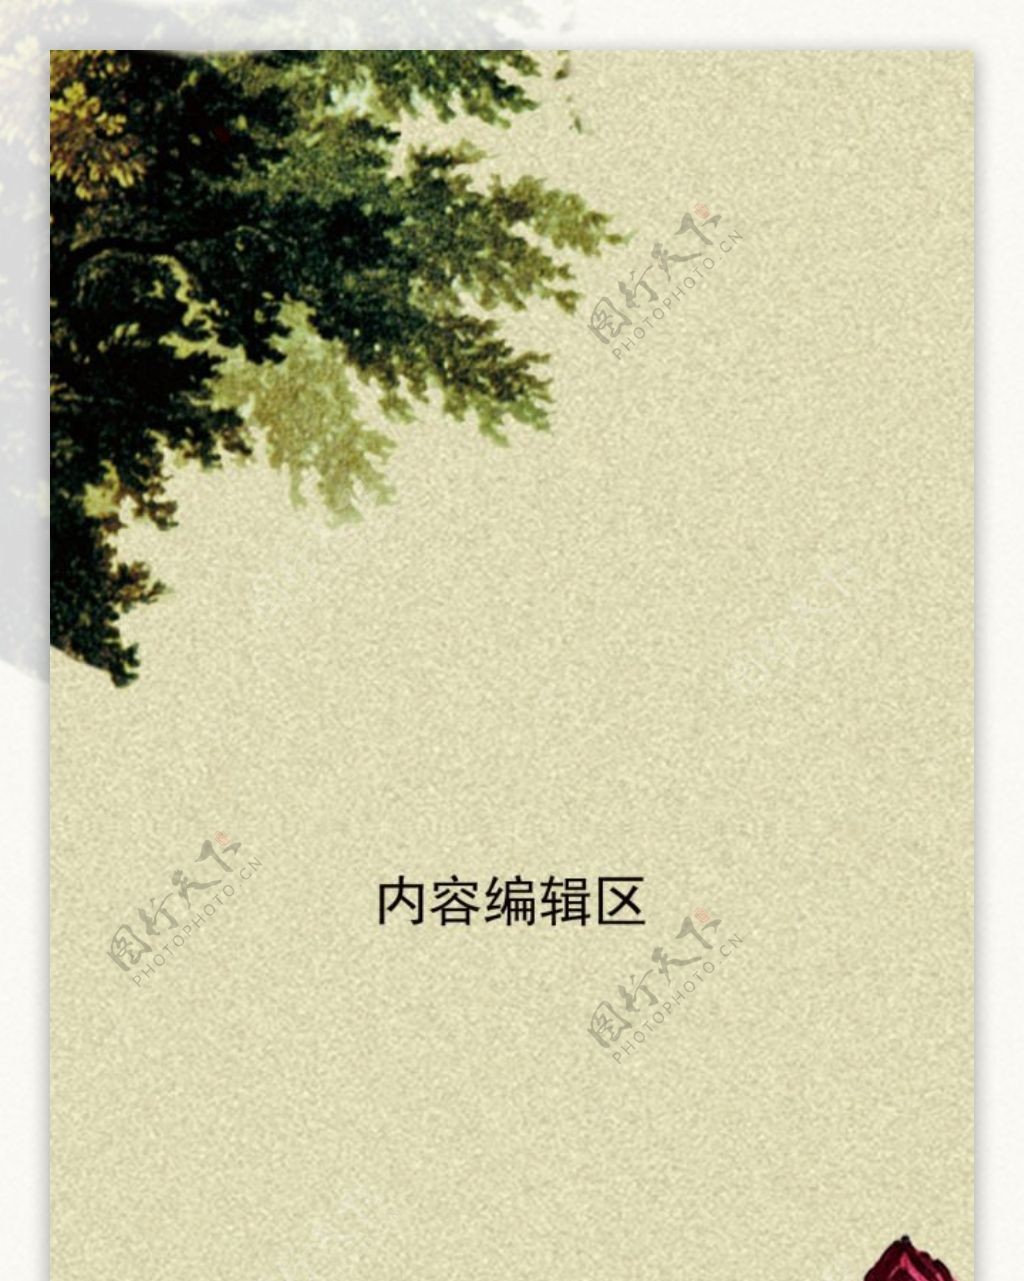 精美中国风展架设计素材海报画面